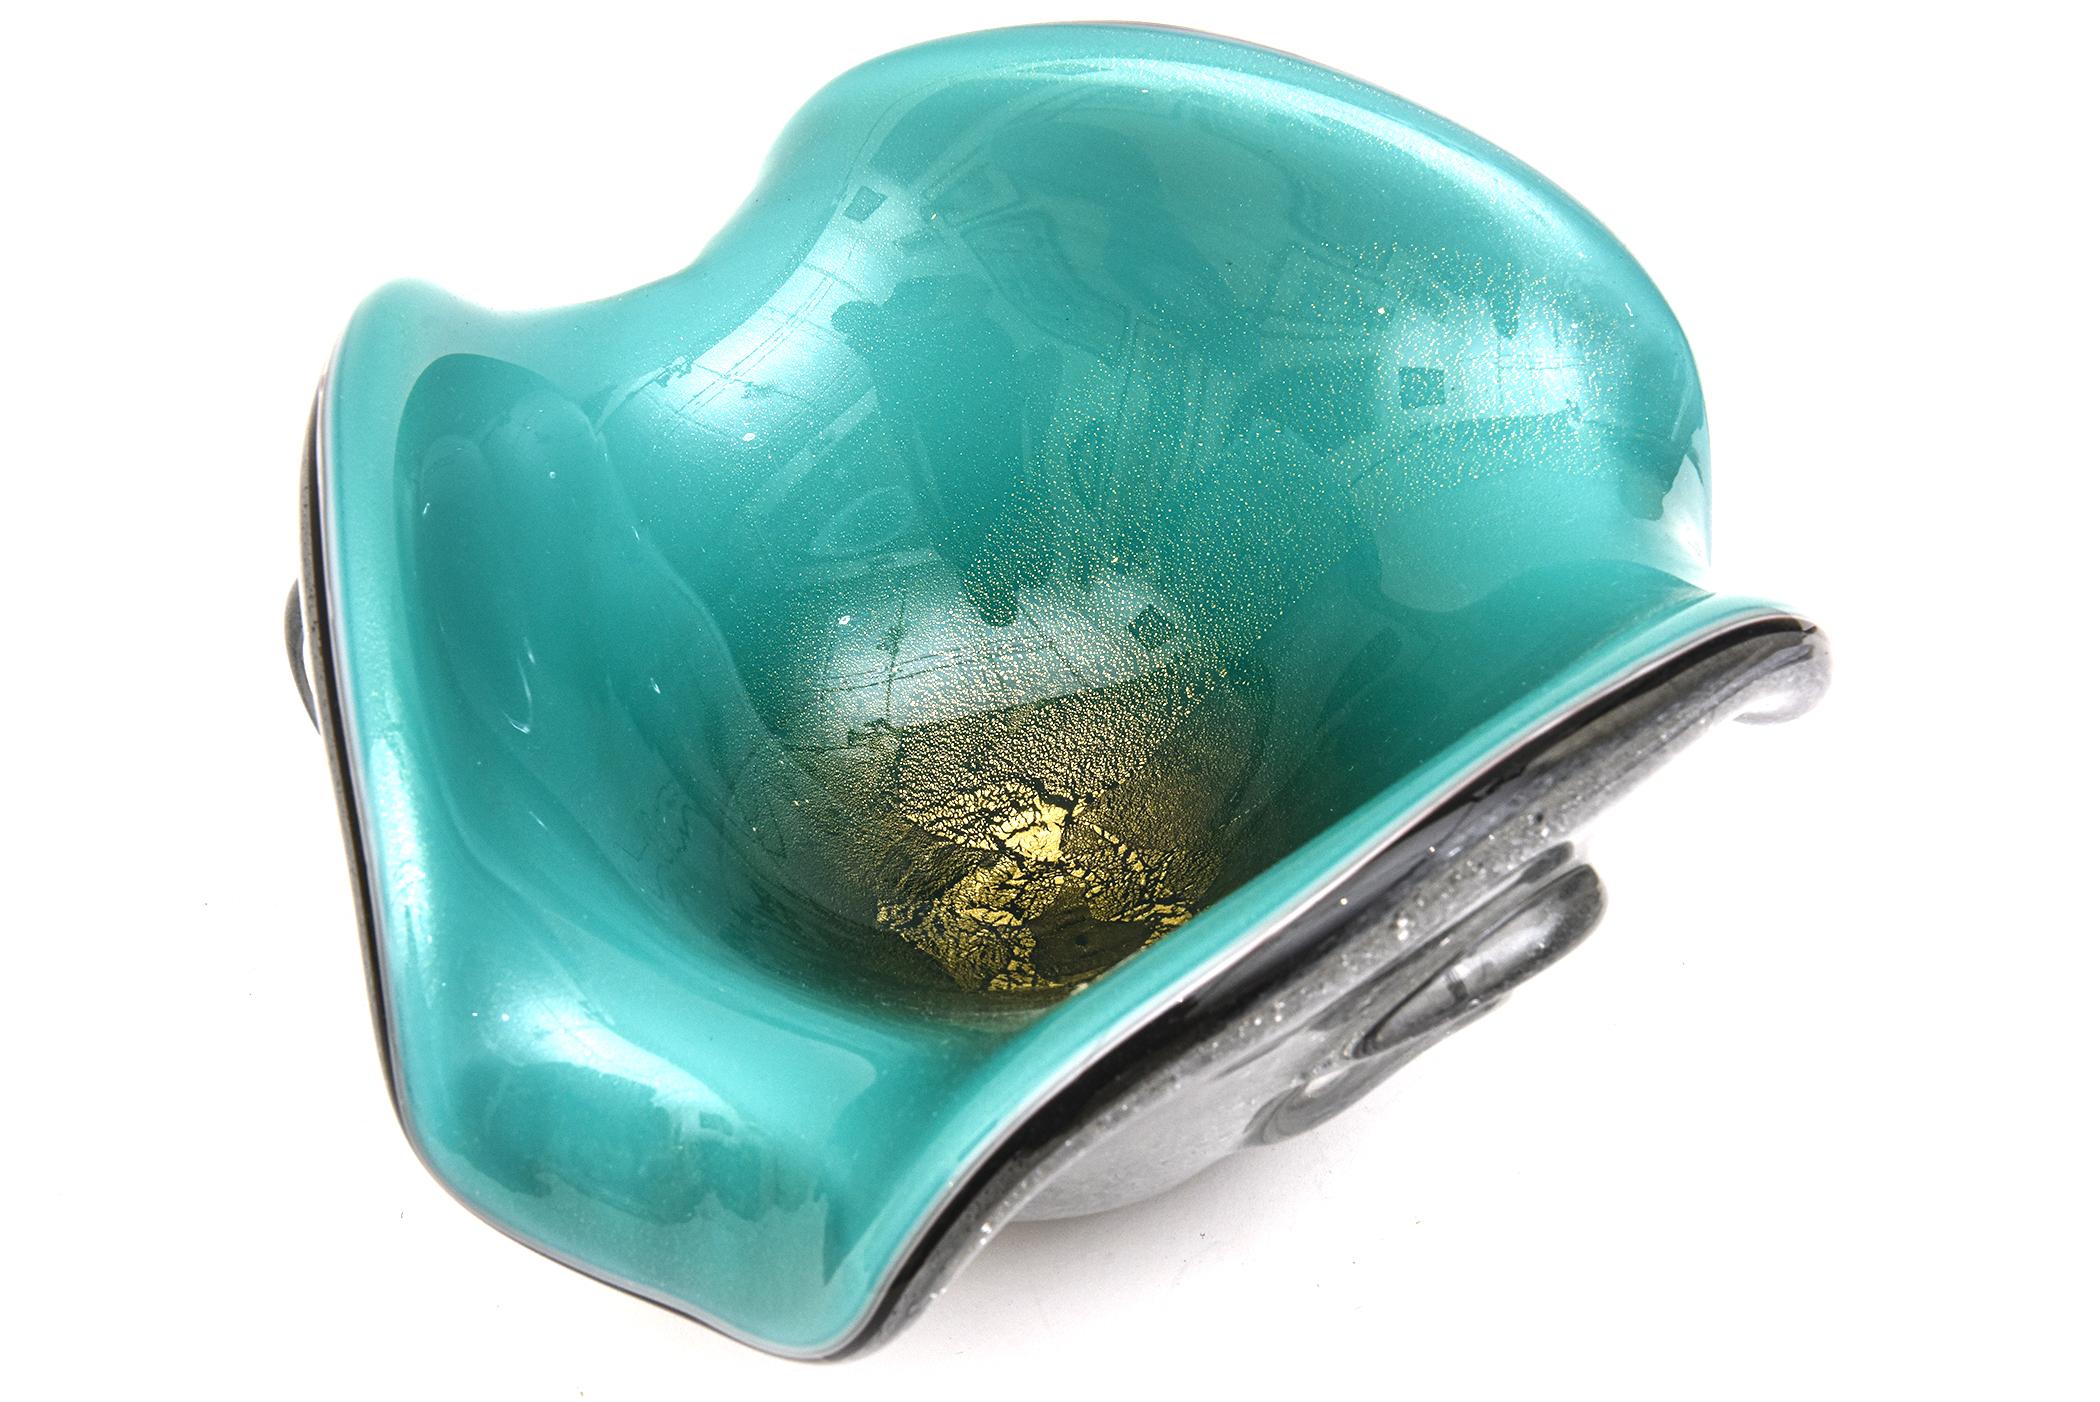 Ce superbe bol en verre soufflé à la main de Murano est une création de Seguso Vetri d'Arte des années 50. Il est composé de trois couches de verre avec une abondance de bulles selon la technique Pulegoso. Il y a encore une partie de l'autocollant